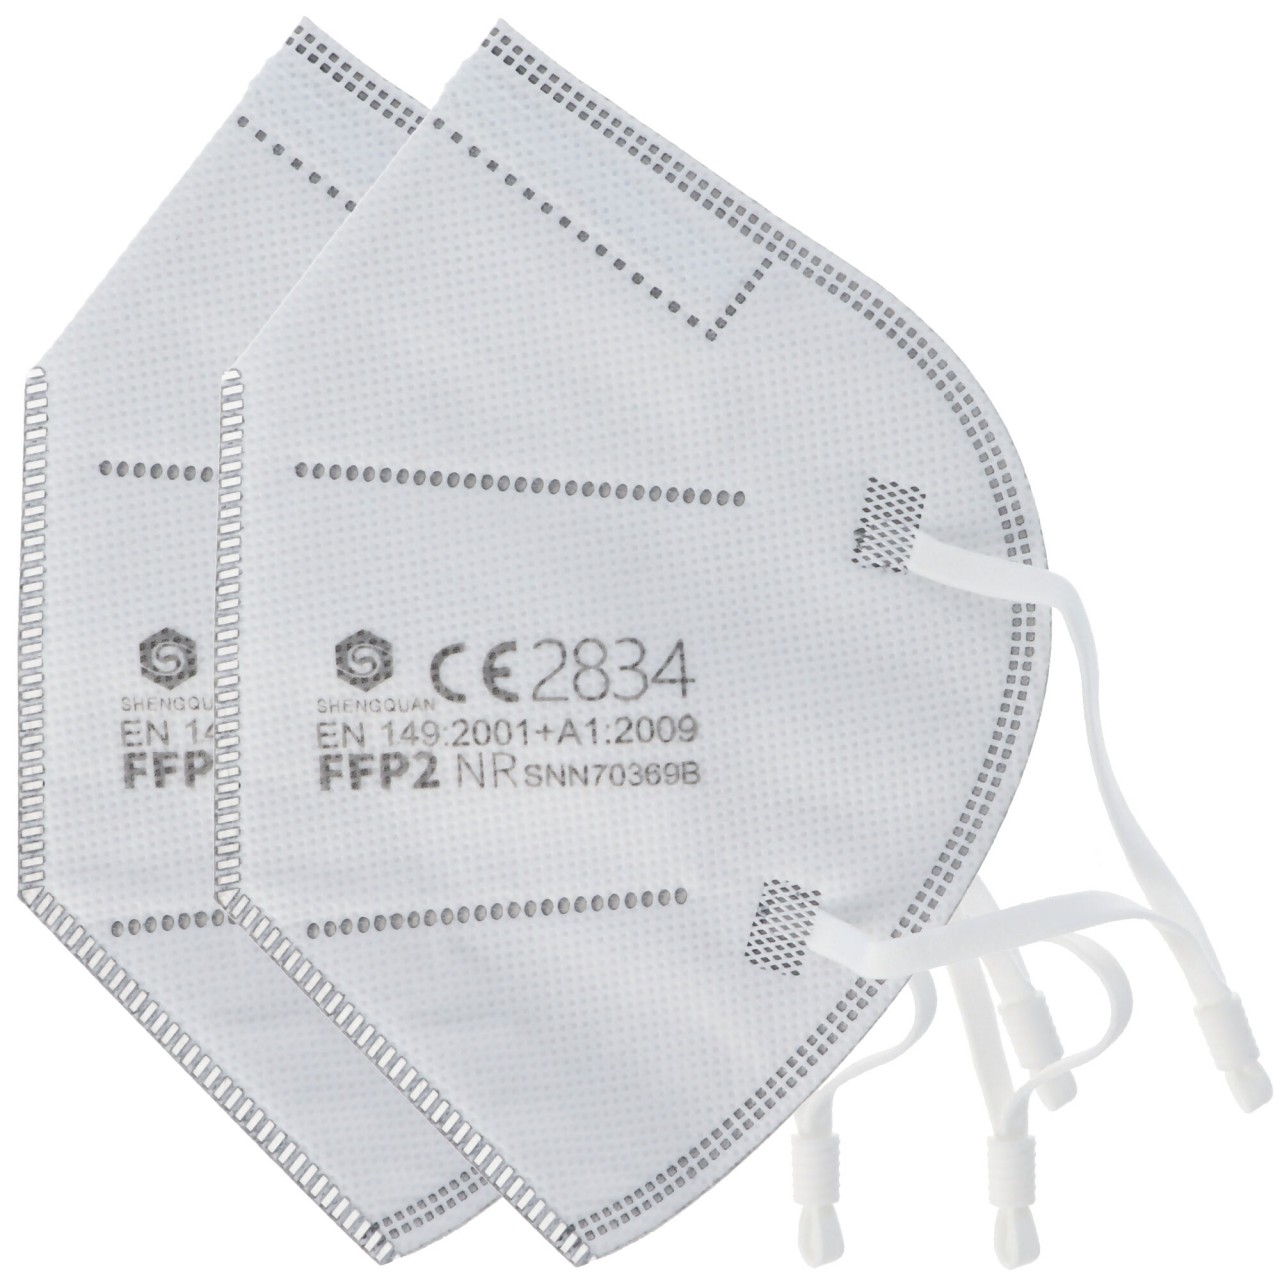 2 Stück FFP2 Maske 5-Lagig ohne Ventil, zertifiziert nach DIN EN149:2001+A1:2009, partikelfiltrierende Halbmaske, FFP2 Schutzmaske